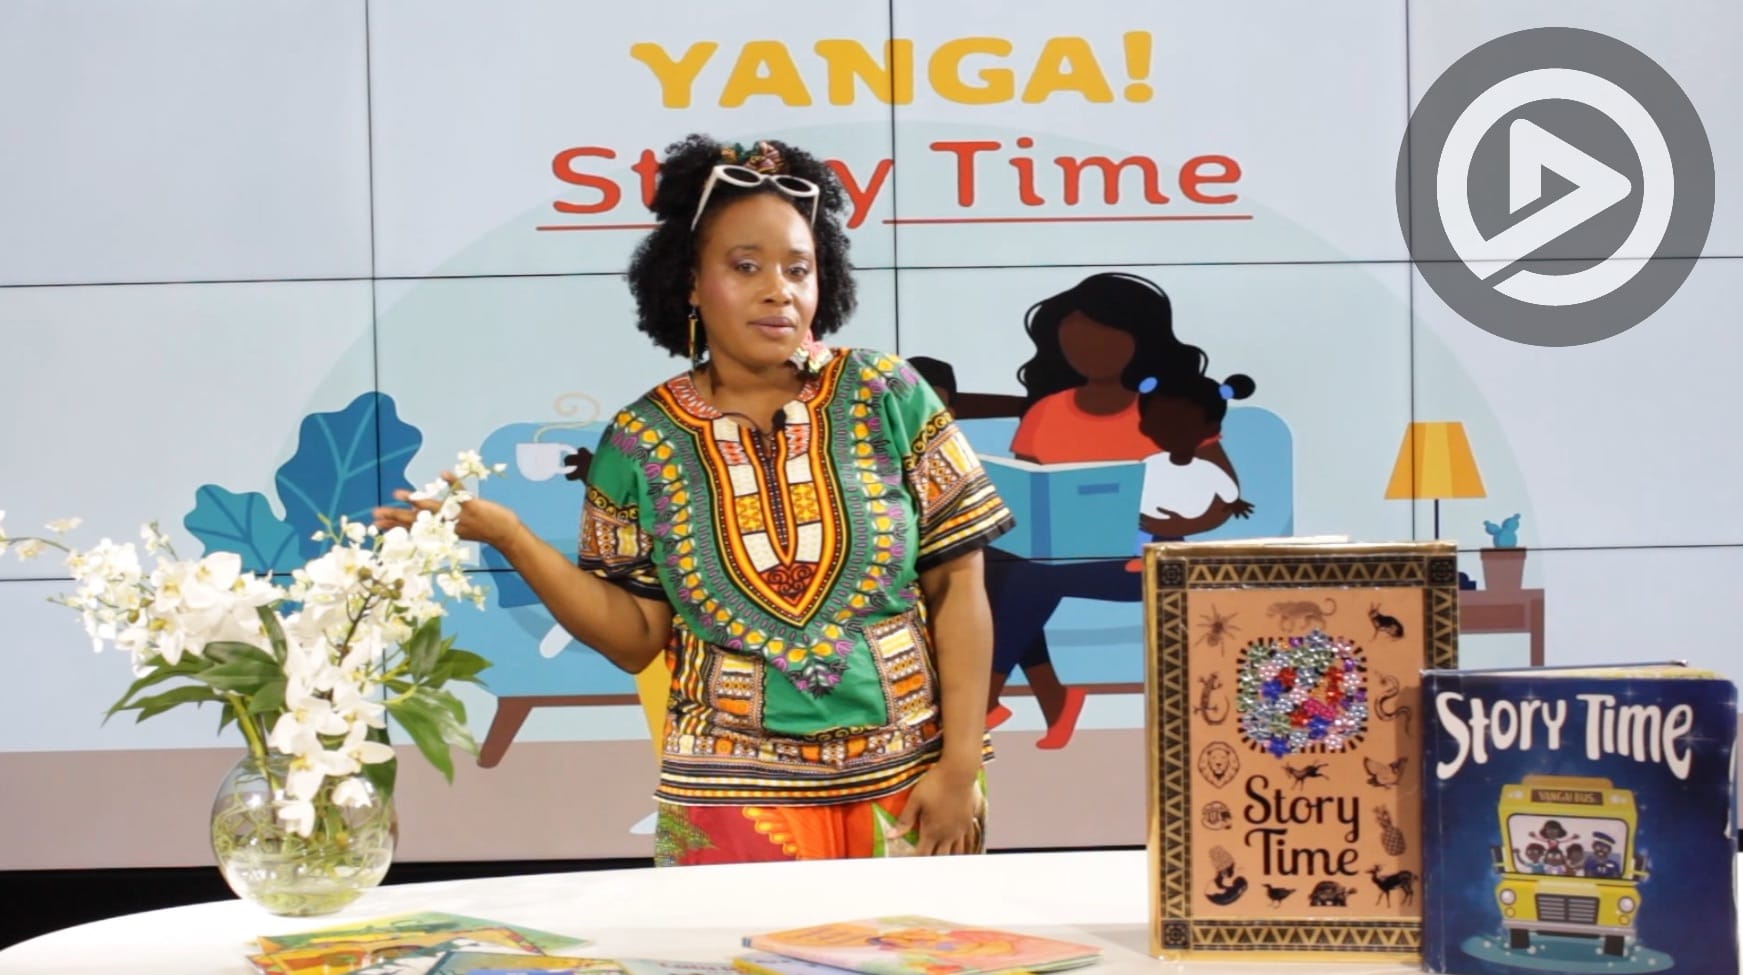 Kids: Yanga! Storytime